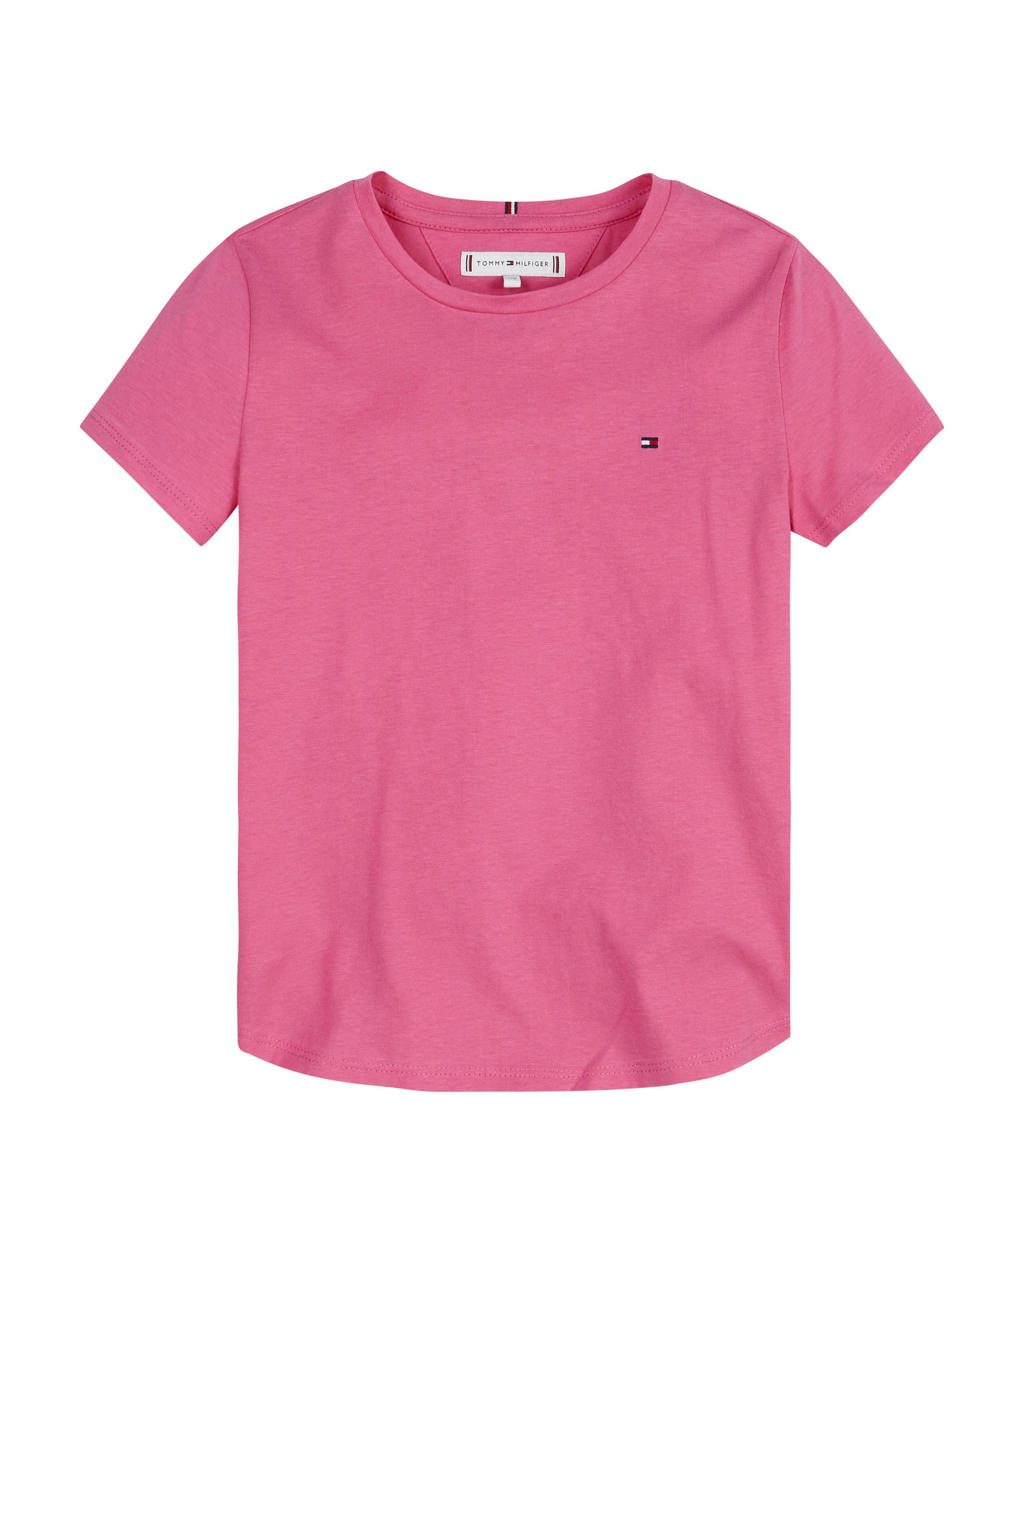 Roze meisjes Tommy Hilfiger T-shirt van katoen met korte mouwen en ronde hals